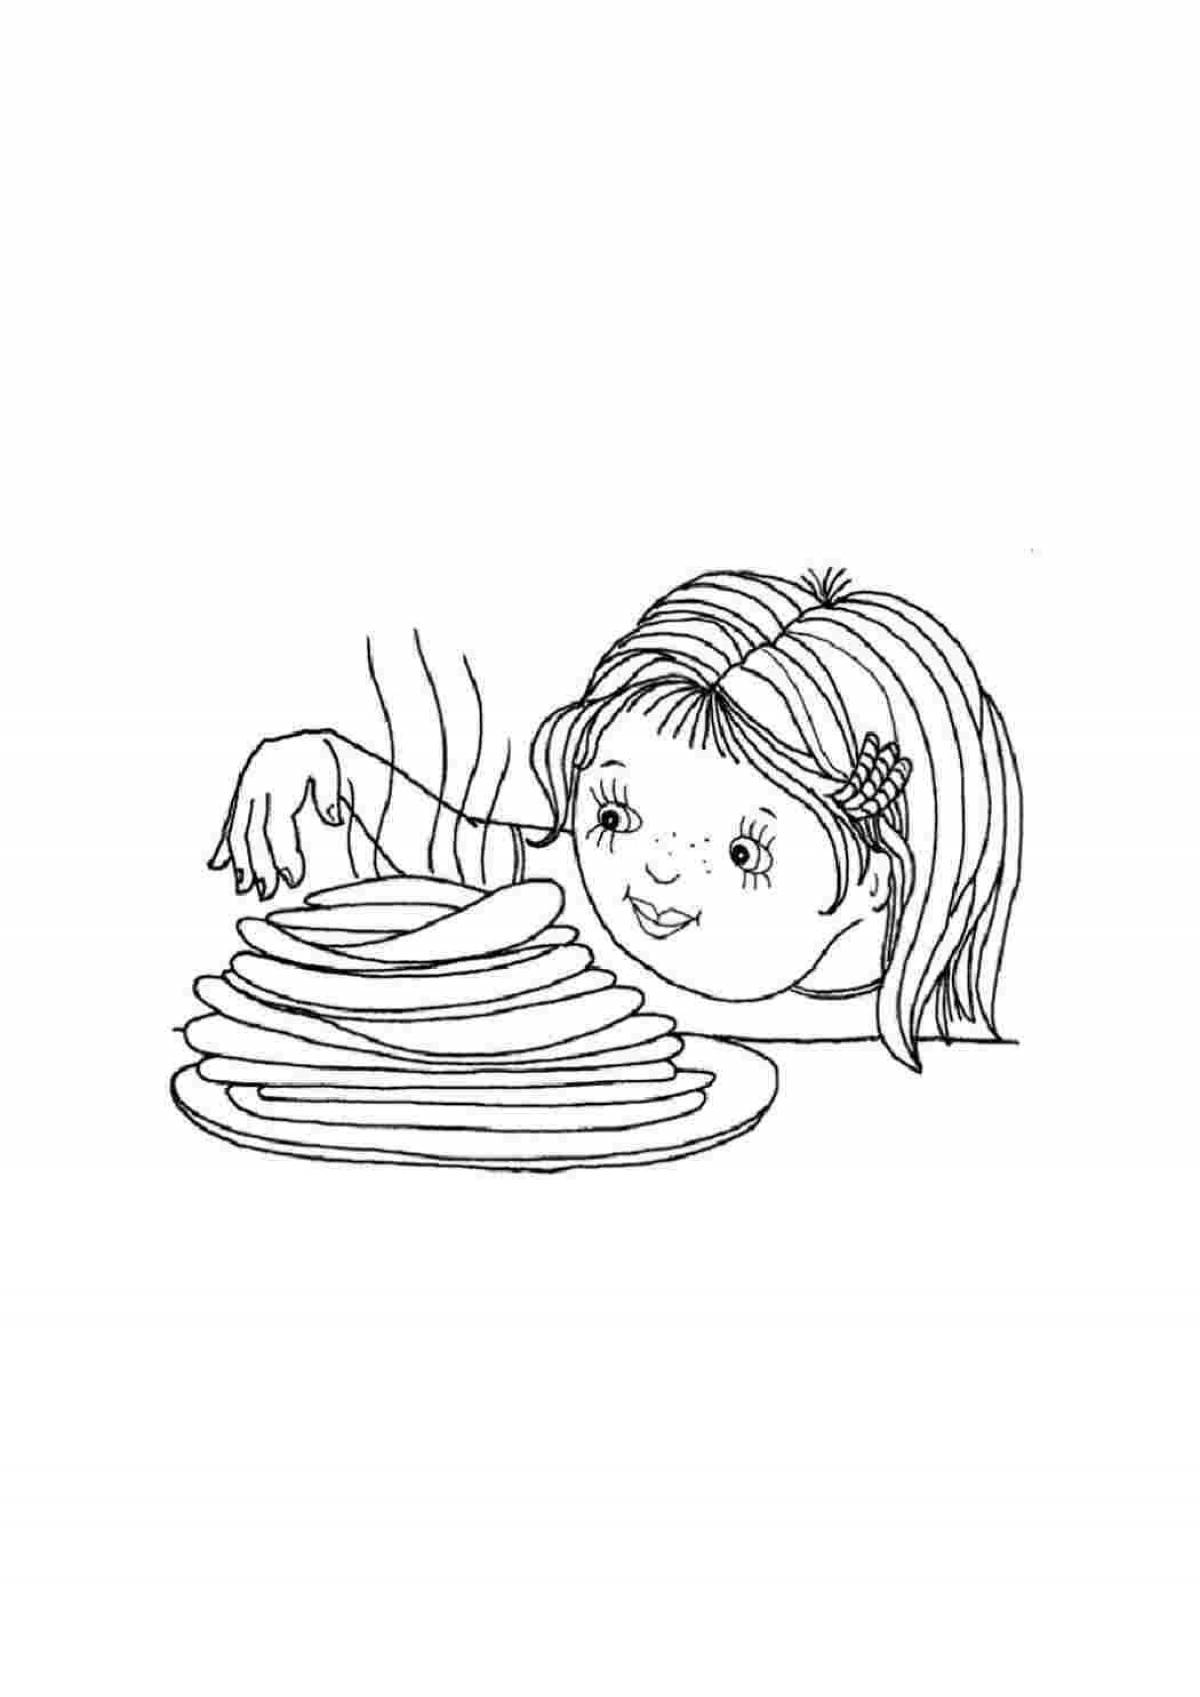 Shrovetide for children 3 4 years old #5